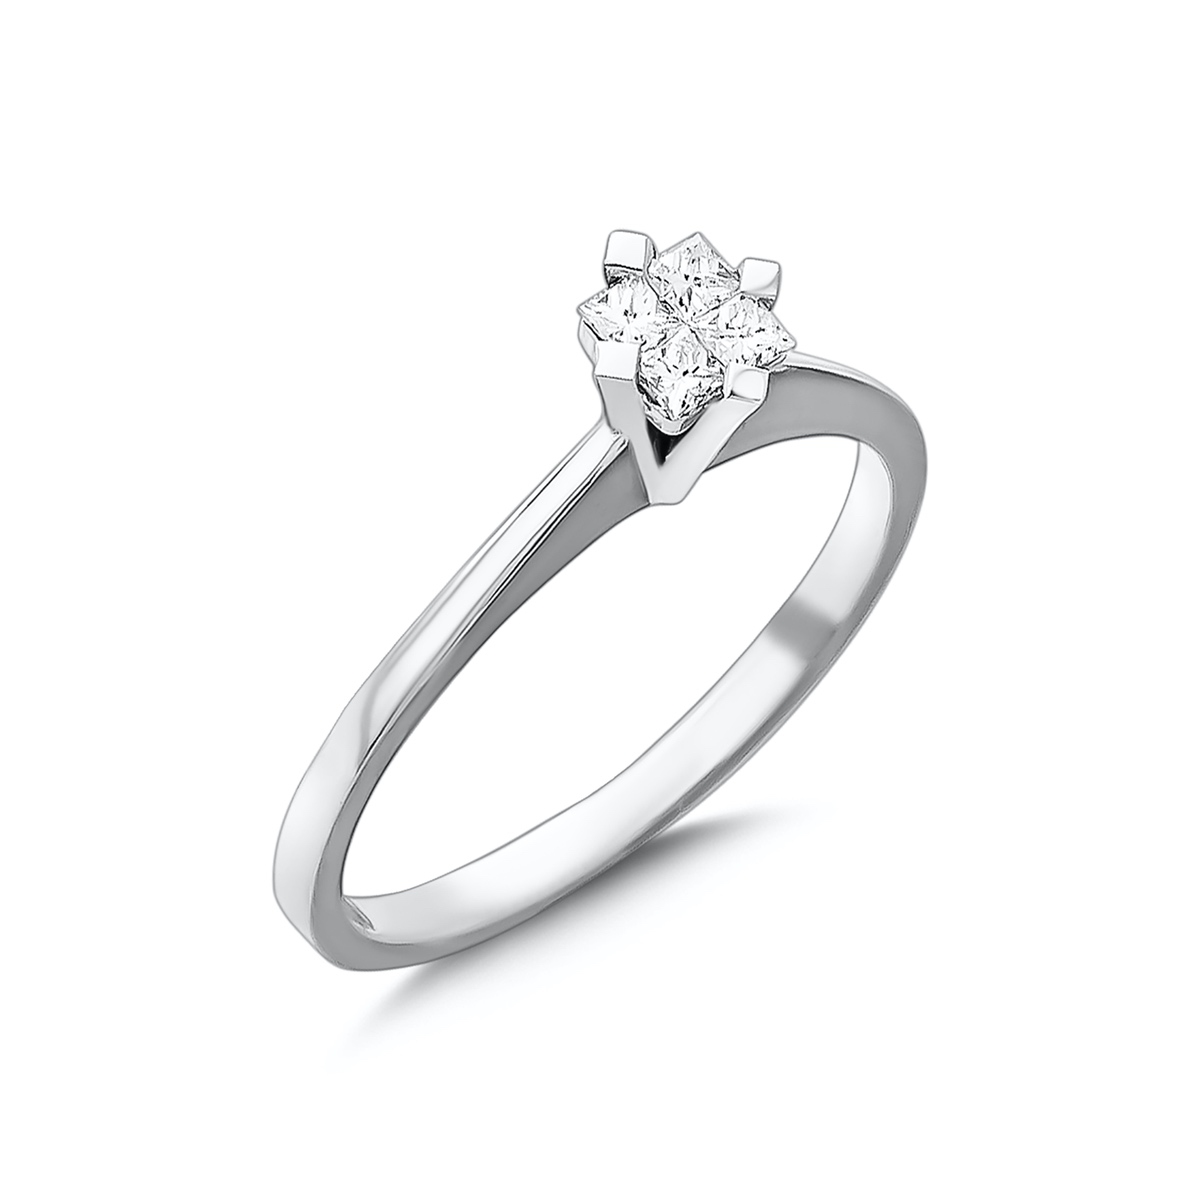 Buy Endara Diamond Ring Online From Kisna